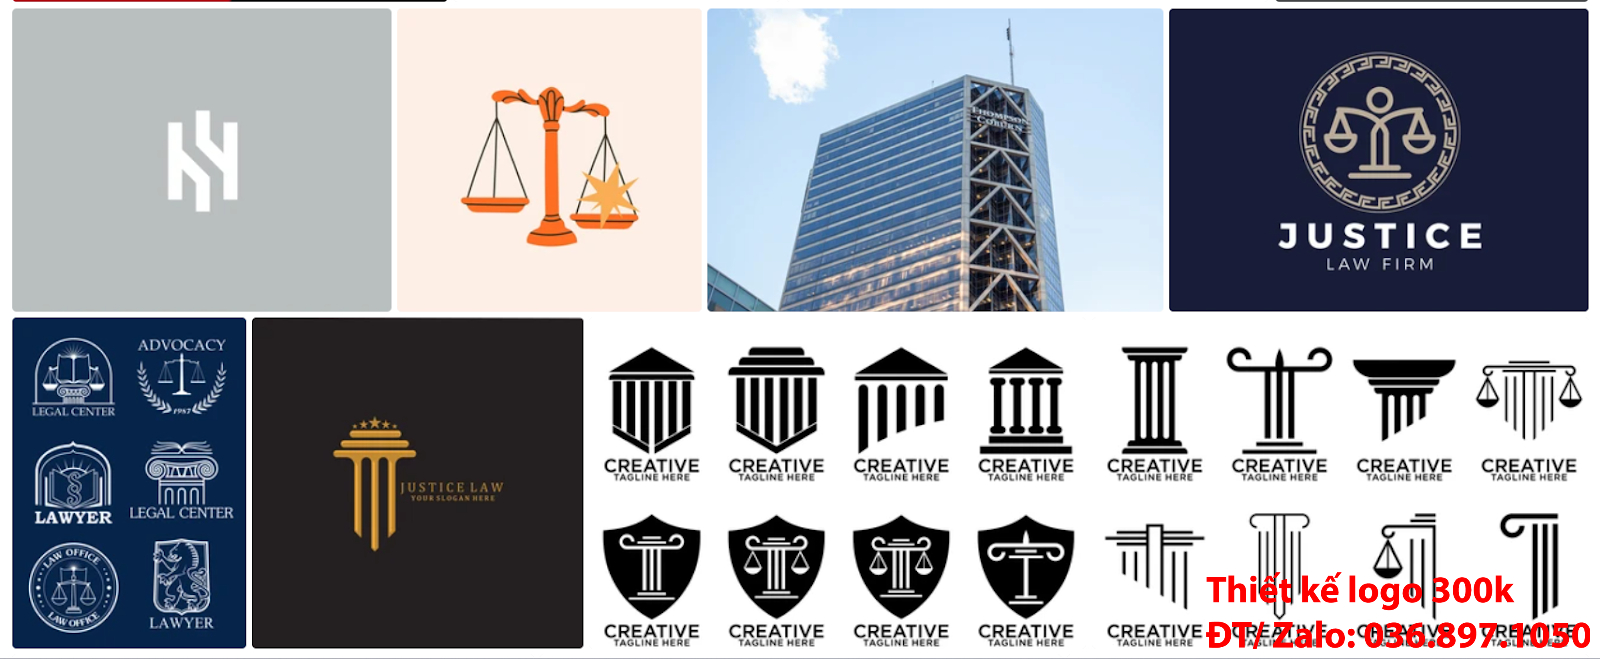 Cách Tạo logo công ty luật sư sang trọng khác biệt online vừa đẹp vừa chất lượng và chuyên nghiệp giá 300k - 500k